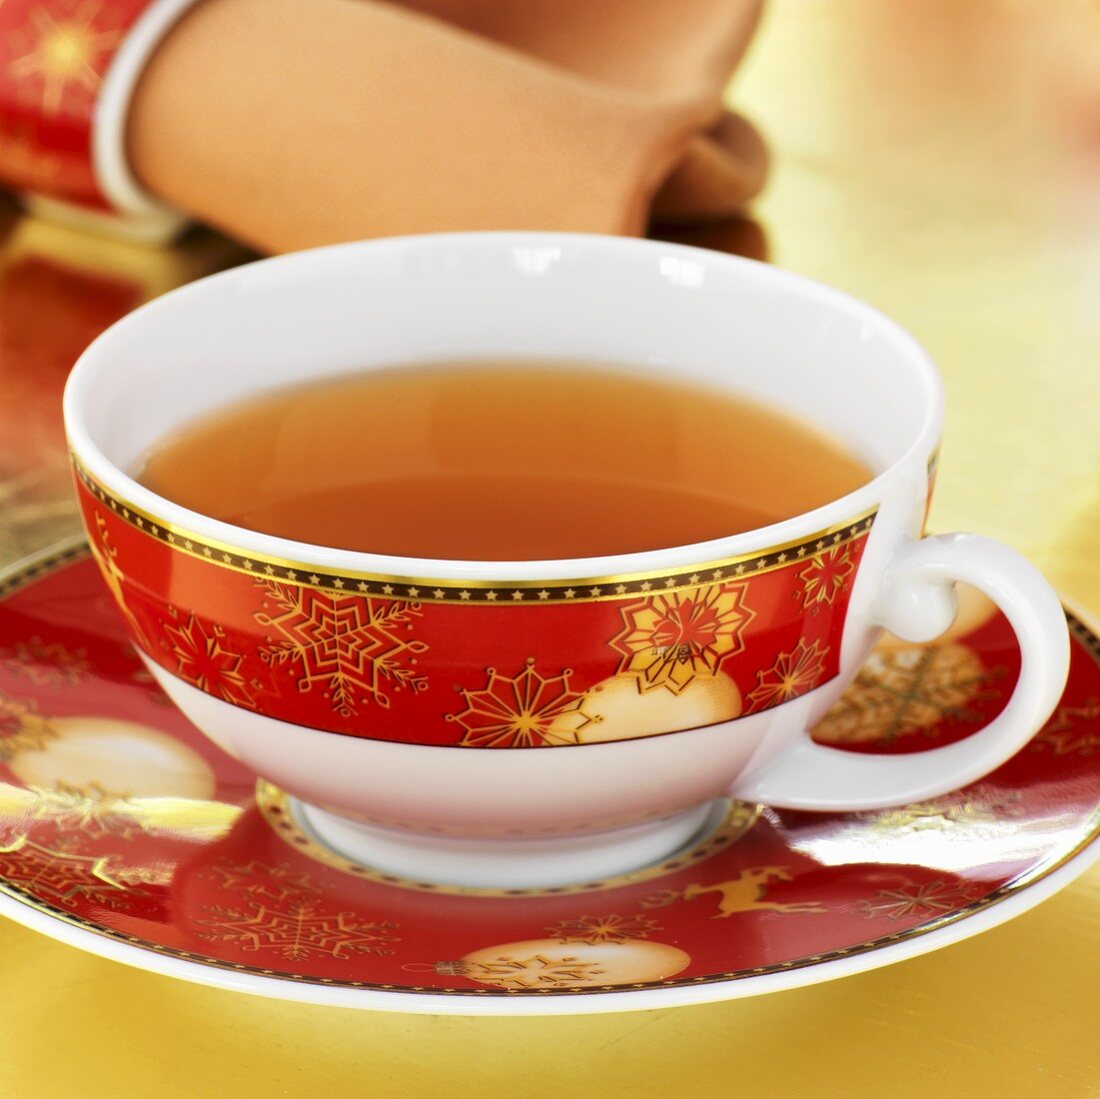 Cup of Christmas tea